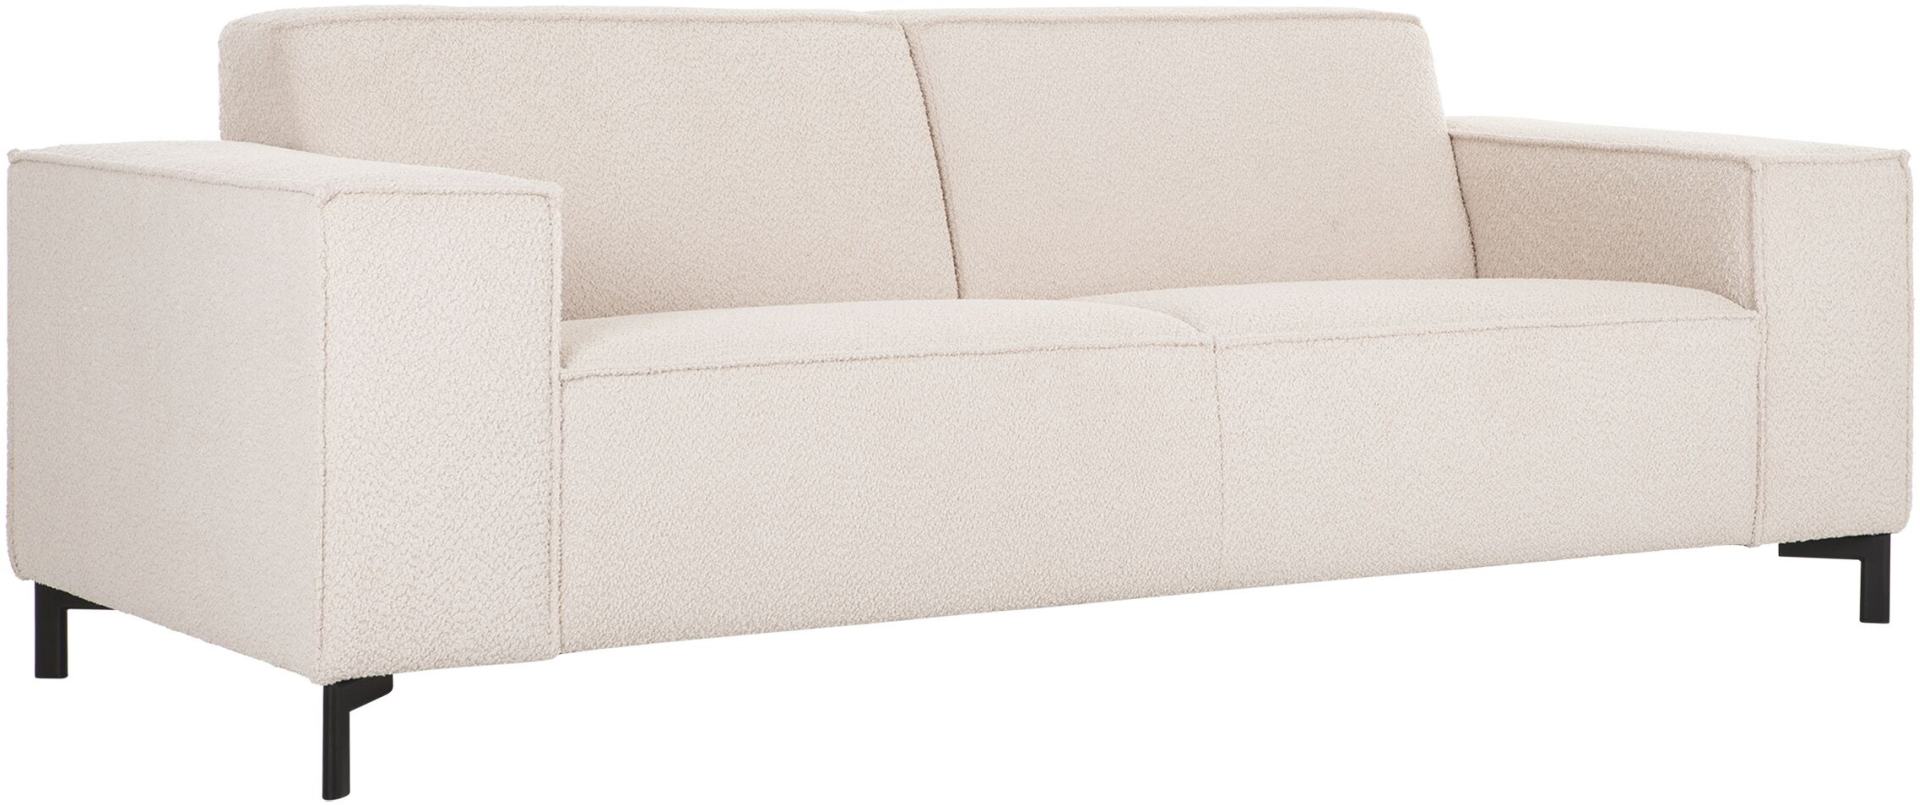 Das 3 Sitzer Sofa Sky überzeugt mit seinem modernem Design. Gefertigt wurde das Sofa aus Teddy Stoff, welcher einen Beigen Farbton hat. Das Gestell ist aus Metall und ist Schwarz.